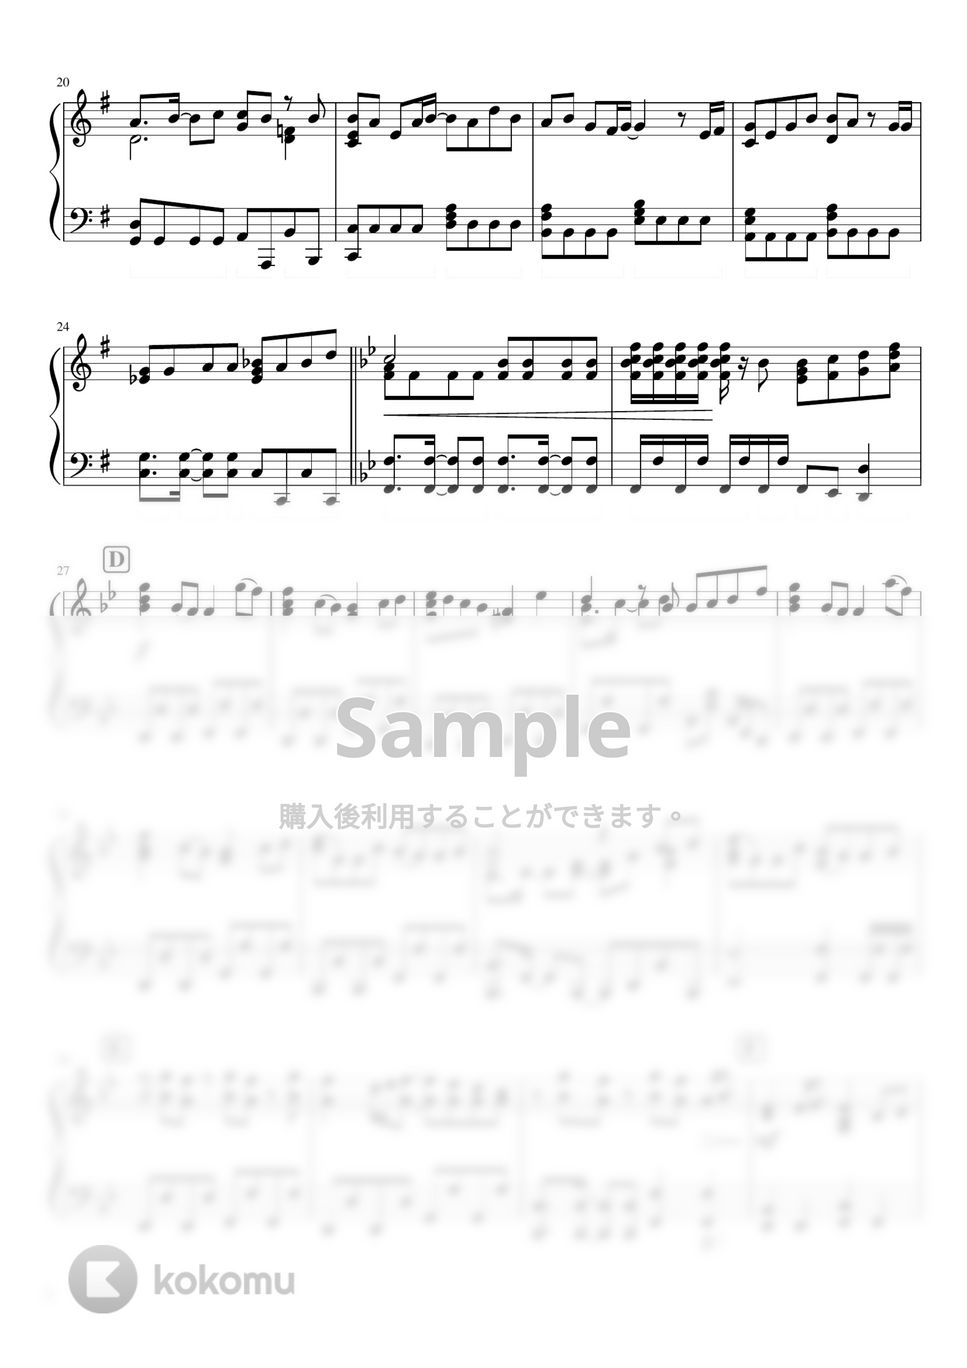 なにわ男子 - 春空 (なにわ男子 4th Single『Special Kiss』) by ピアノぷりん